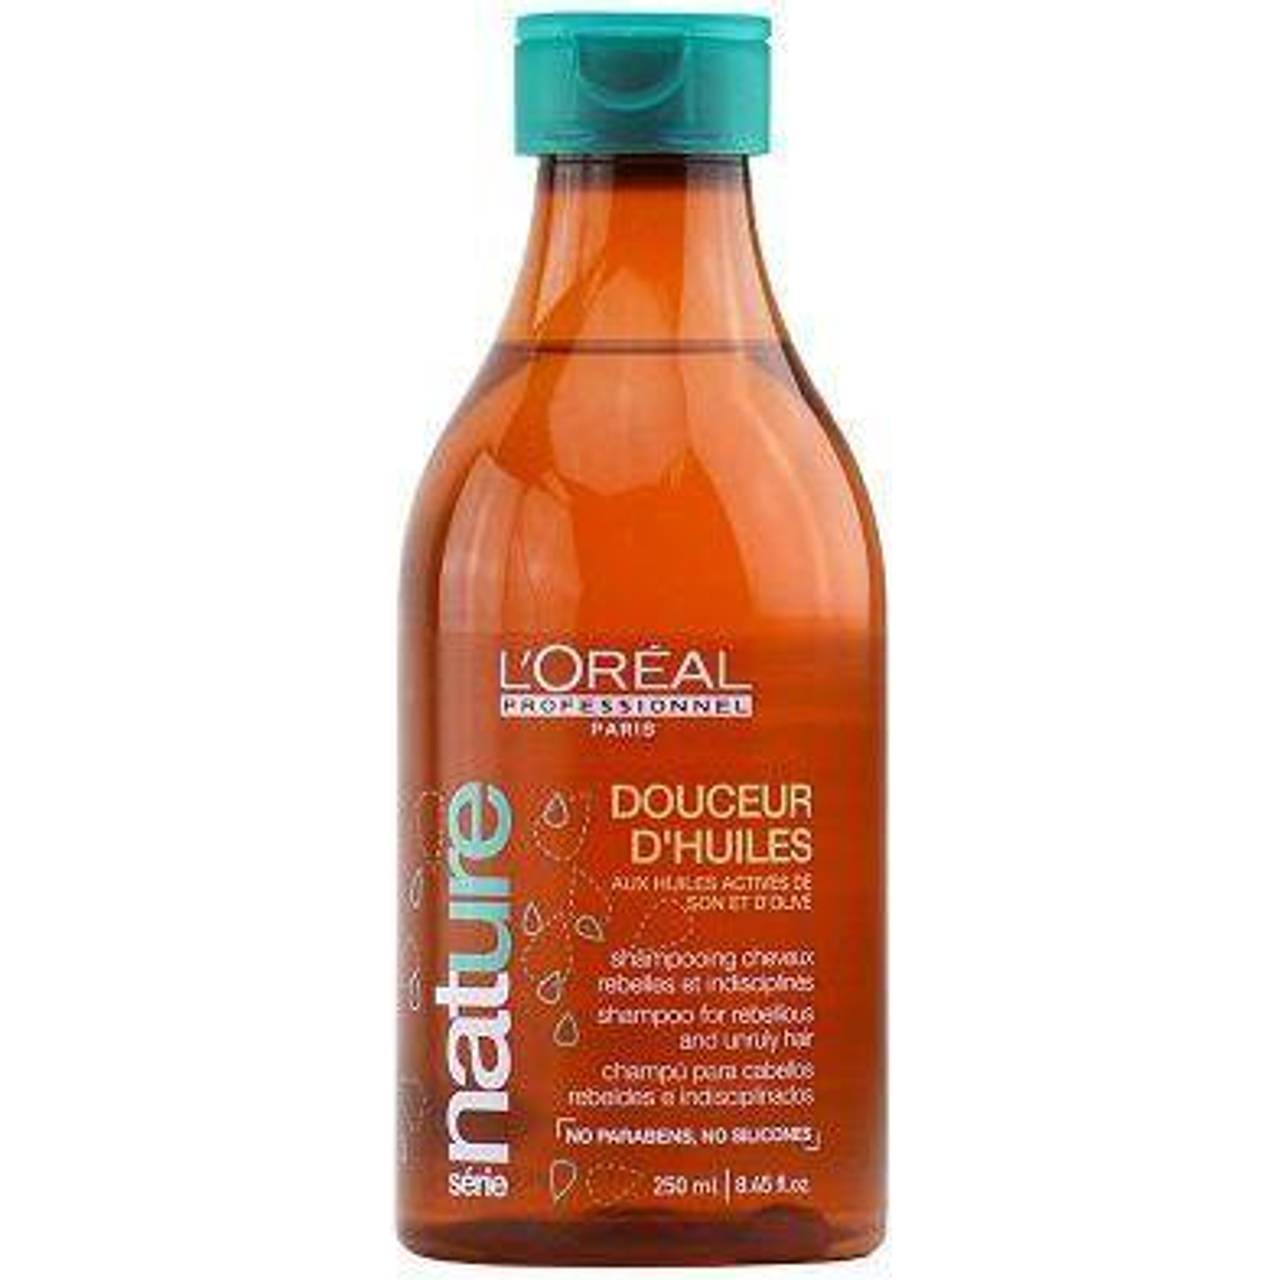 L'Oréal Paris Nature Douceur D Huiles Shampoo 8.5fl oz • Price